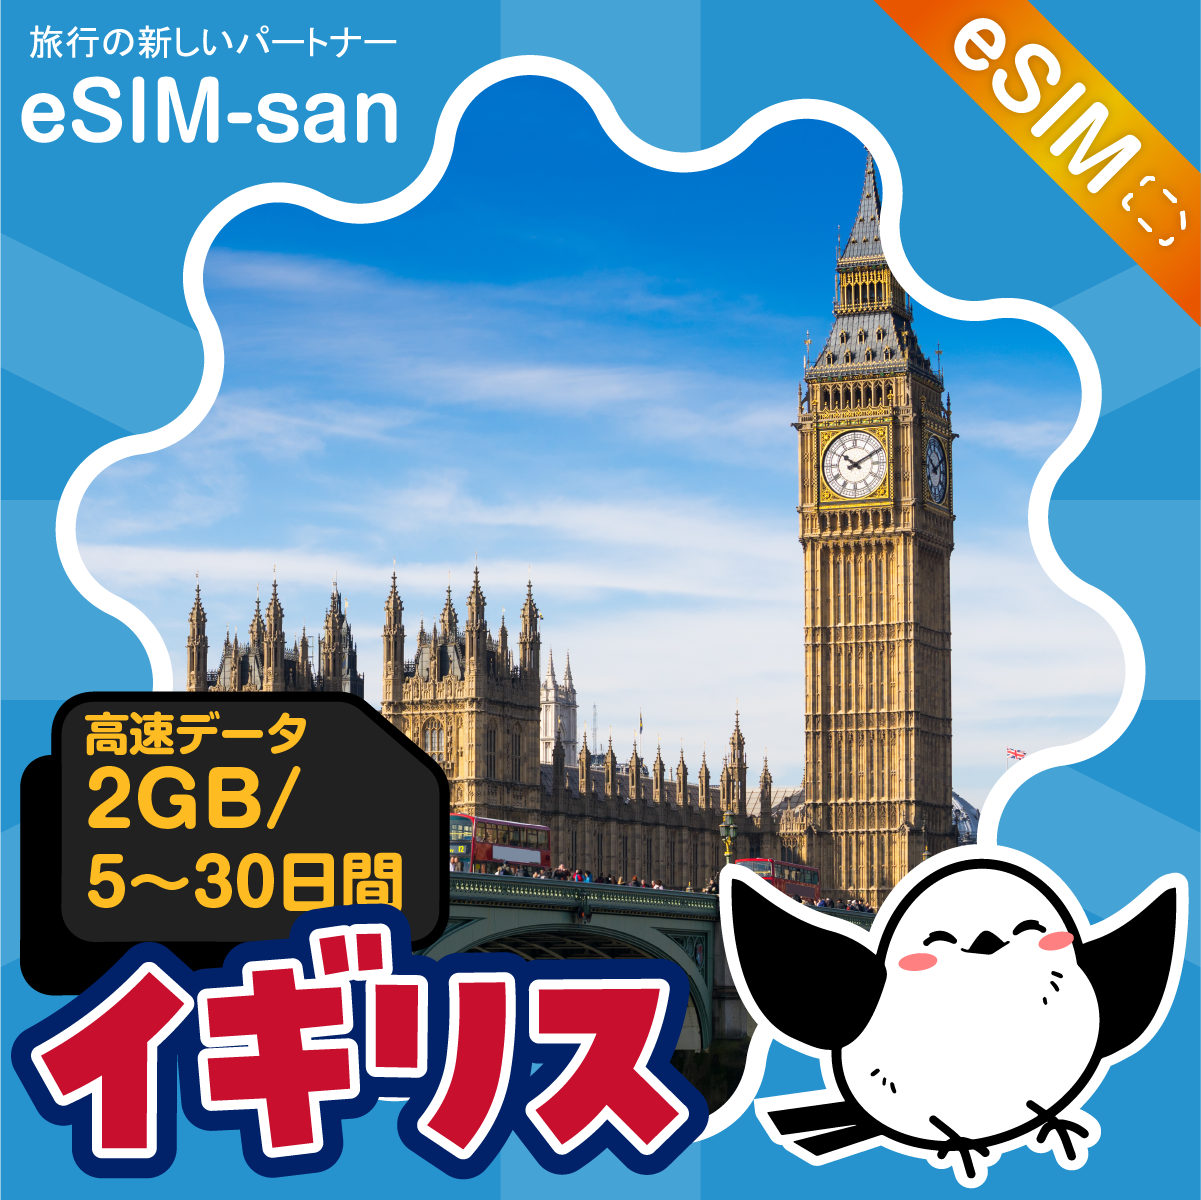 イギリスeSIMの2GB/dayプラン画像_eSIM-san